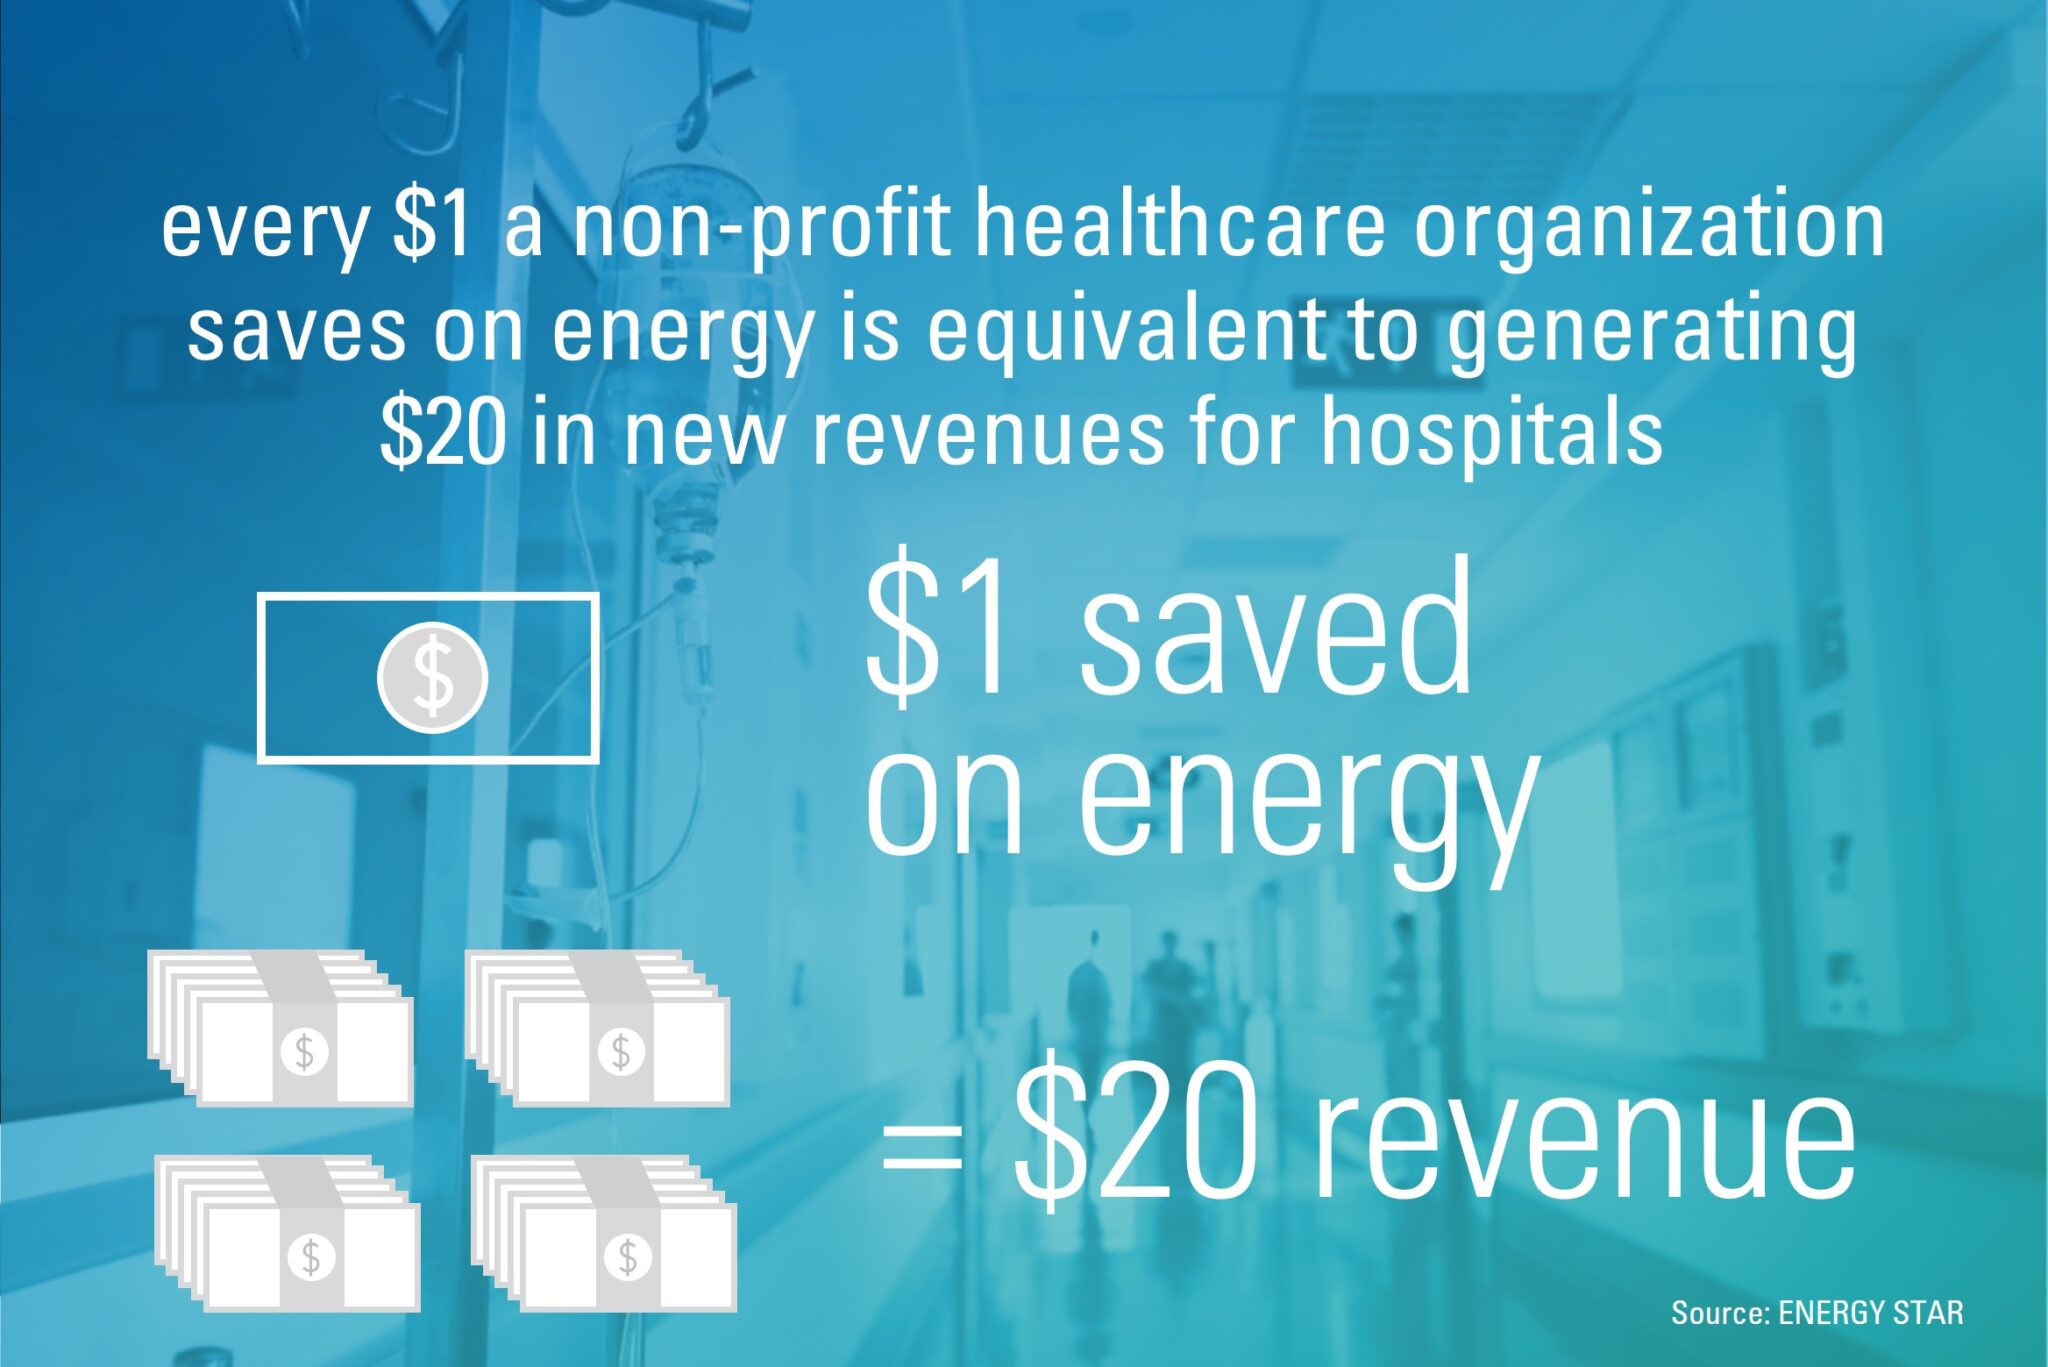 Healthcare energy savings equals revenue